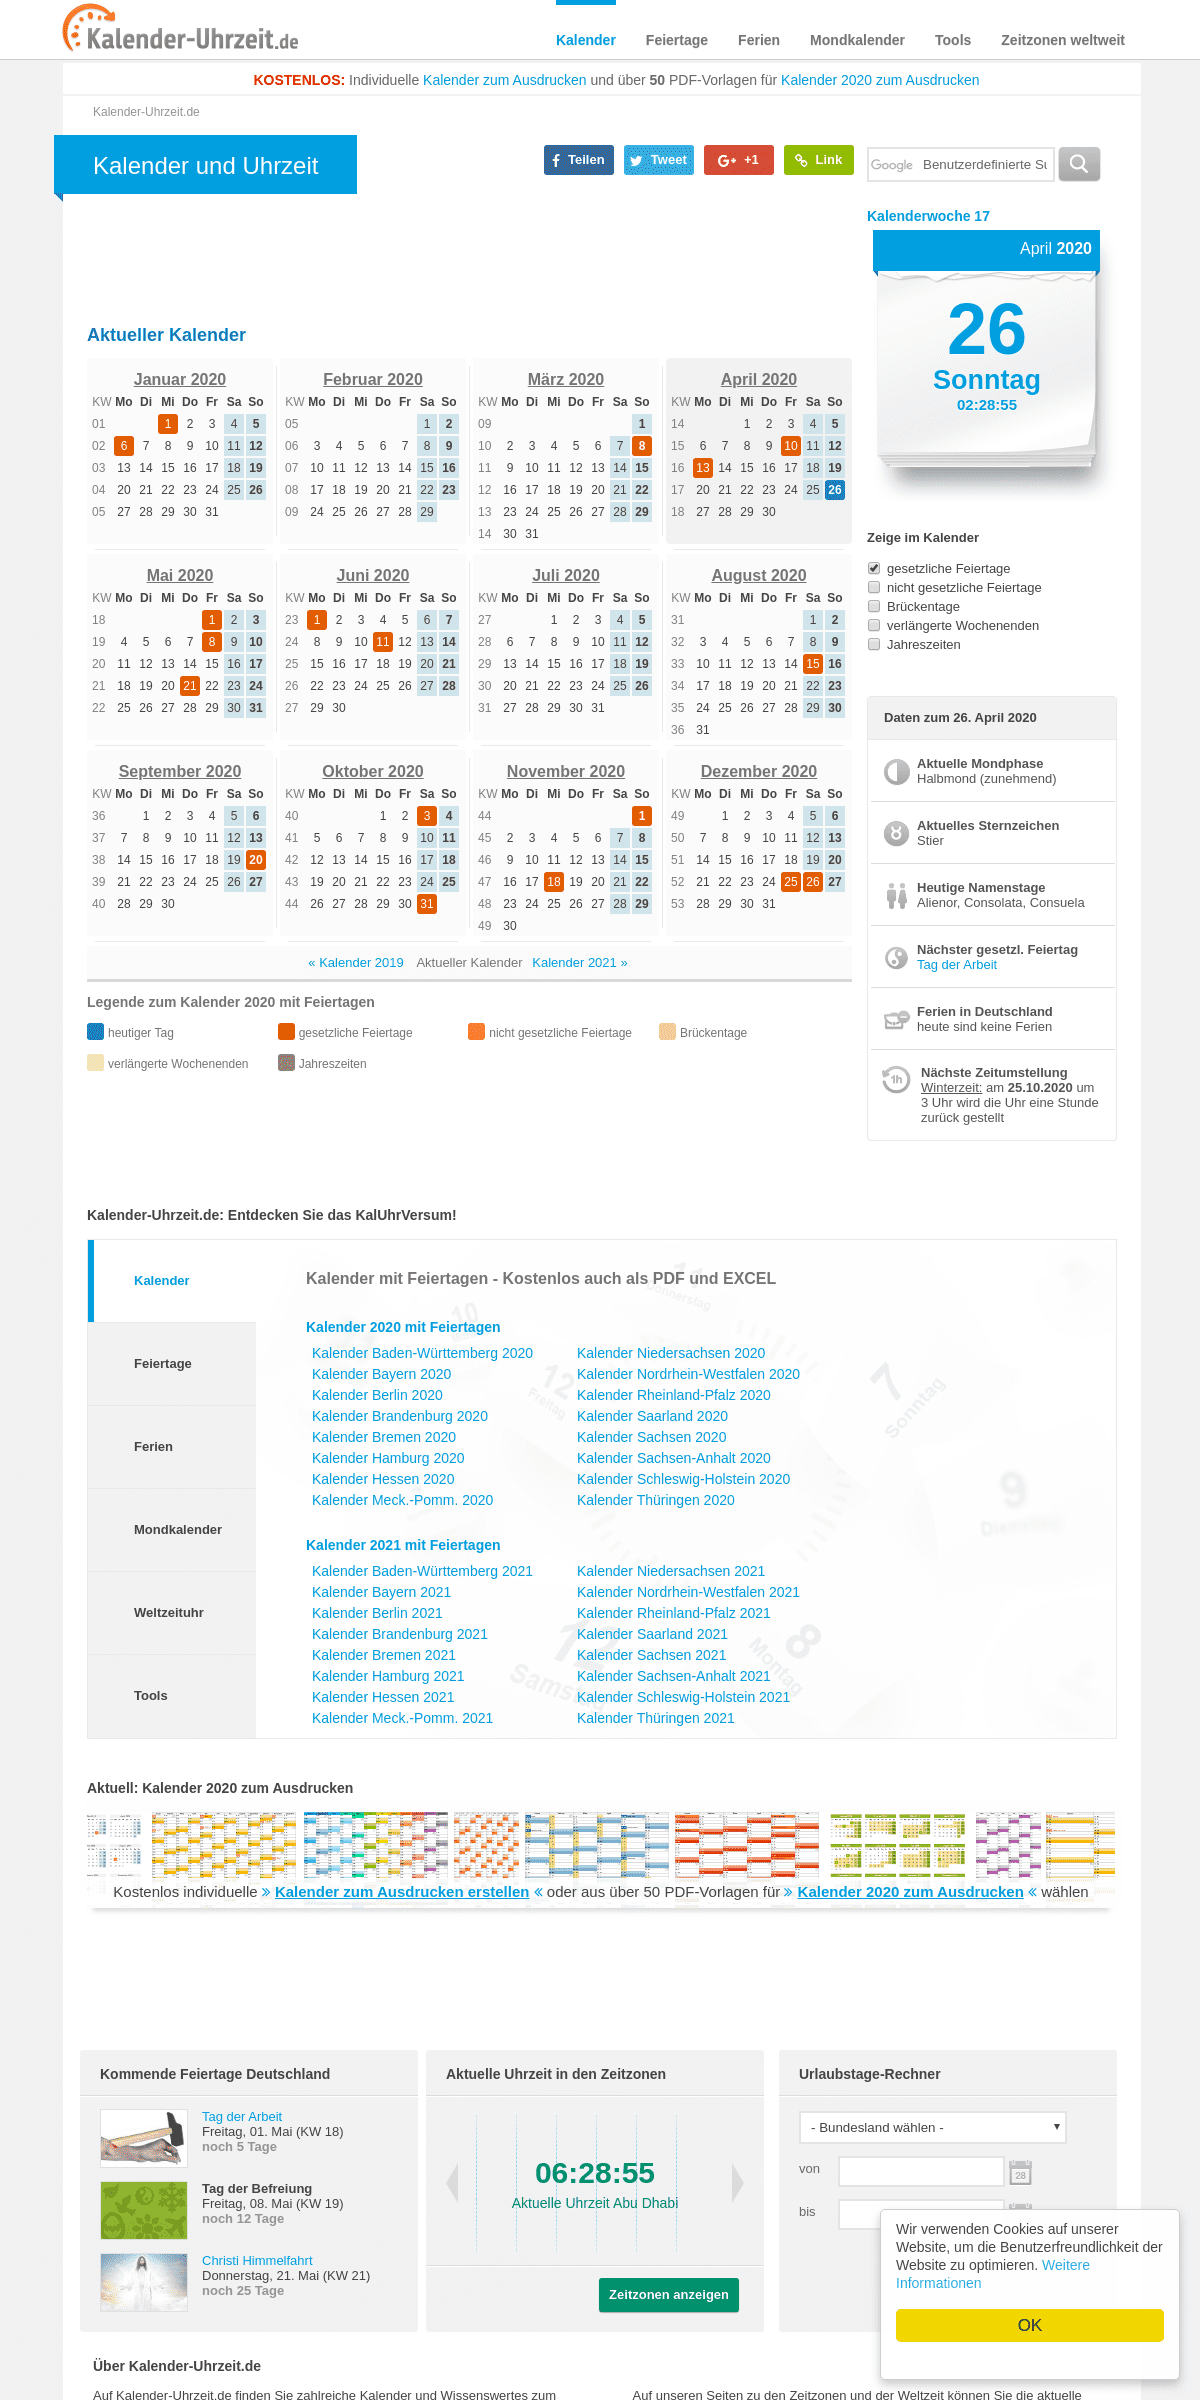 A complete backup of kalender-uhrzeit.de